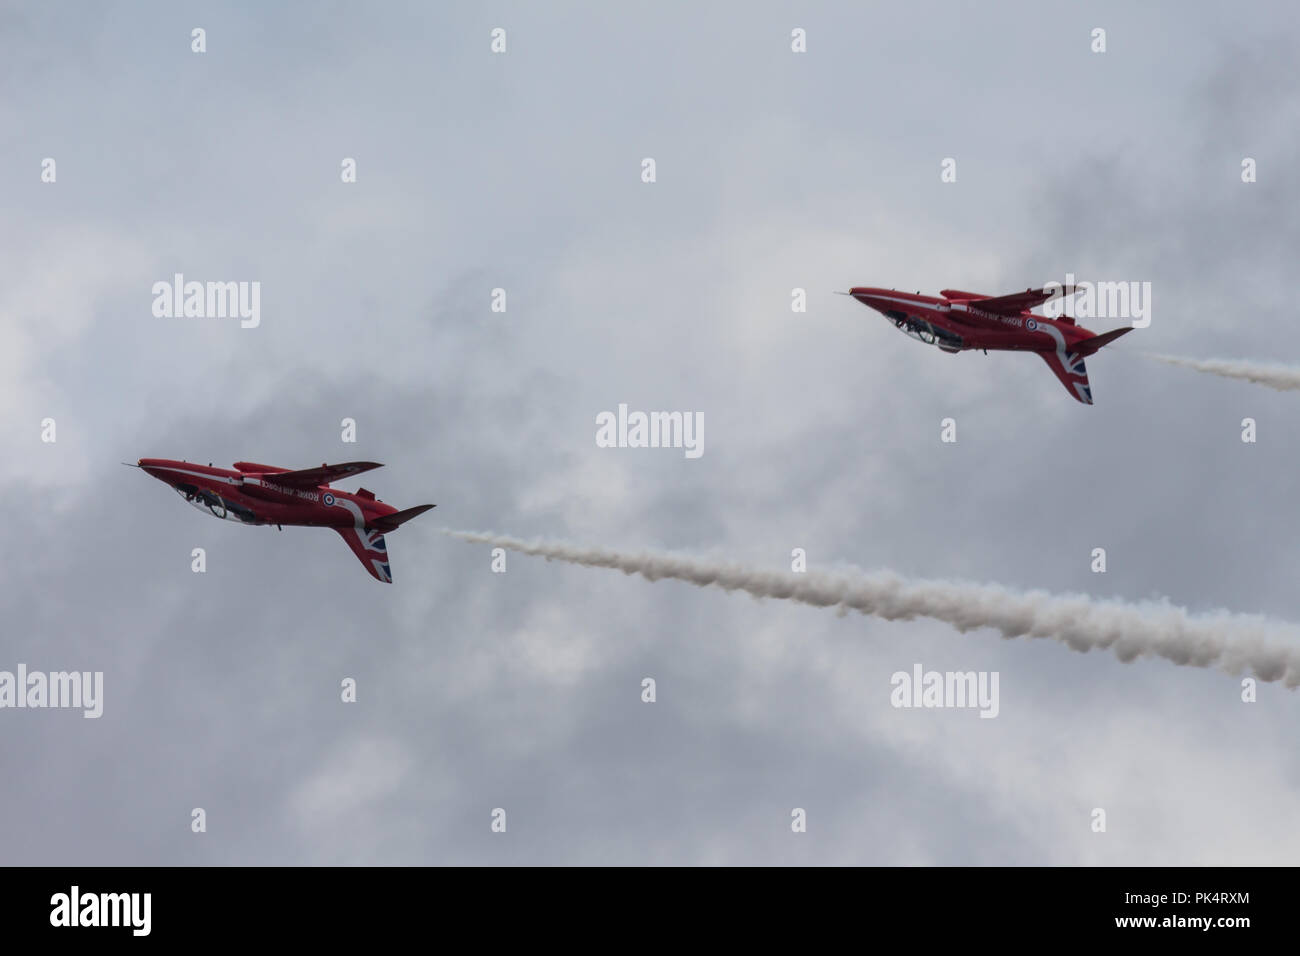 À l'envers - Les flèches rouges, la Royal Air Force, l'équipe de démonstration aérienne, sur l'affichage à l'Airshow sur Carrickfergus Castle, comté d'Antrim, en Irlande. Banque D'Images